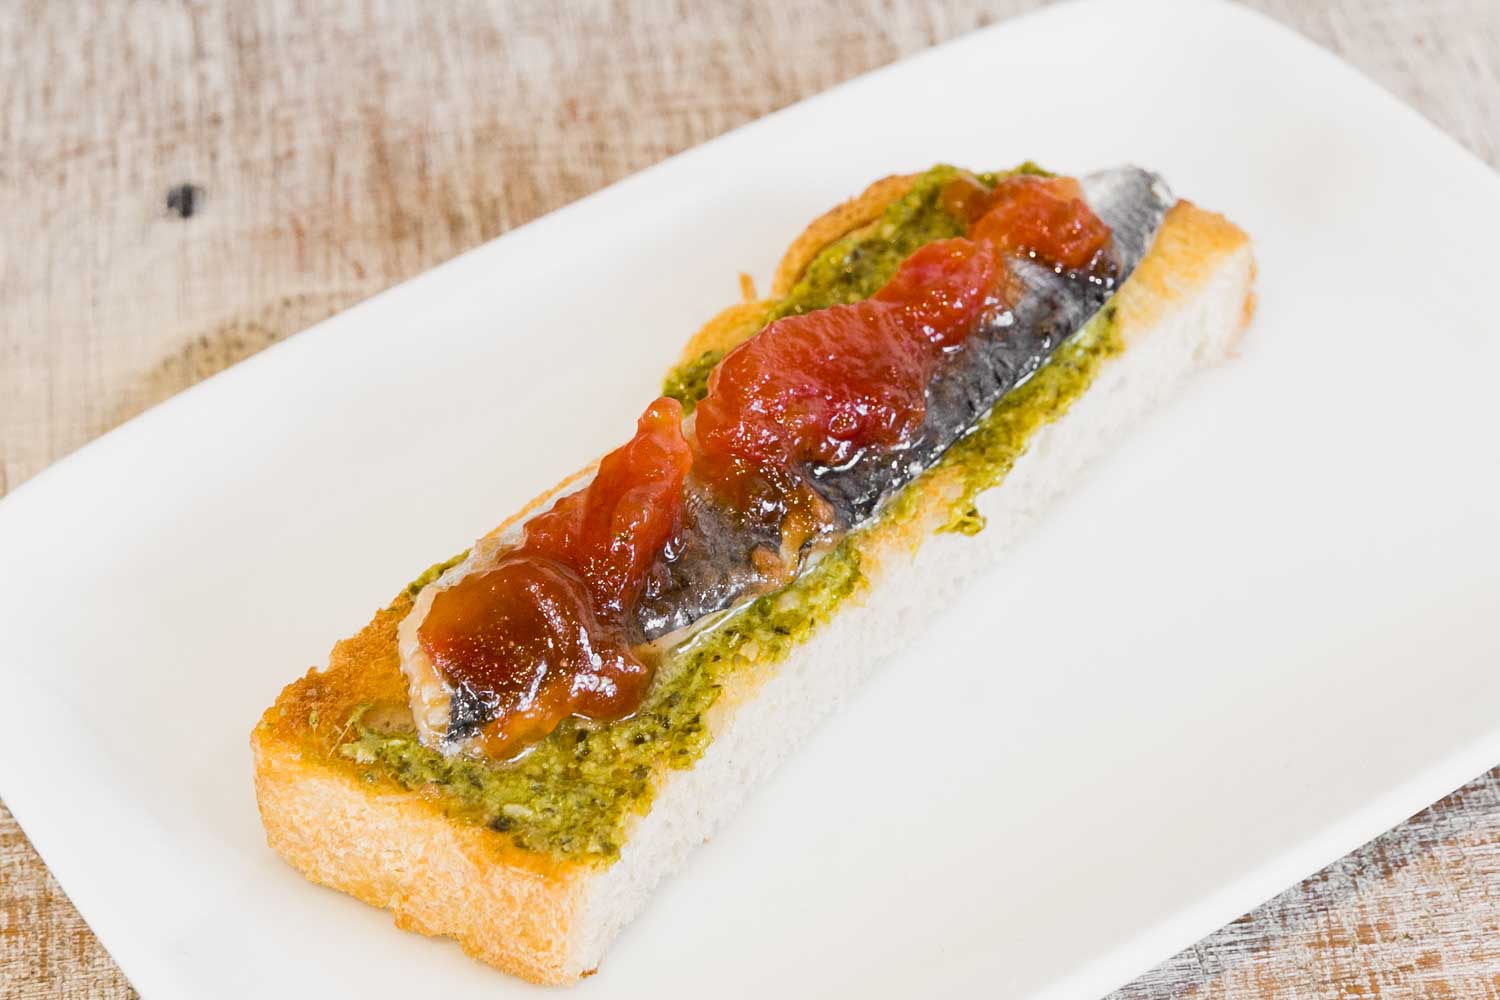 Sardine pintxo with tomato jam